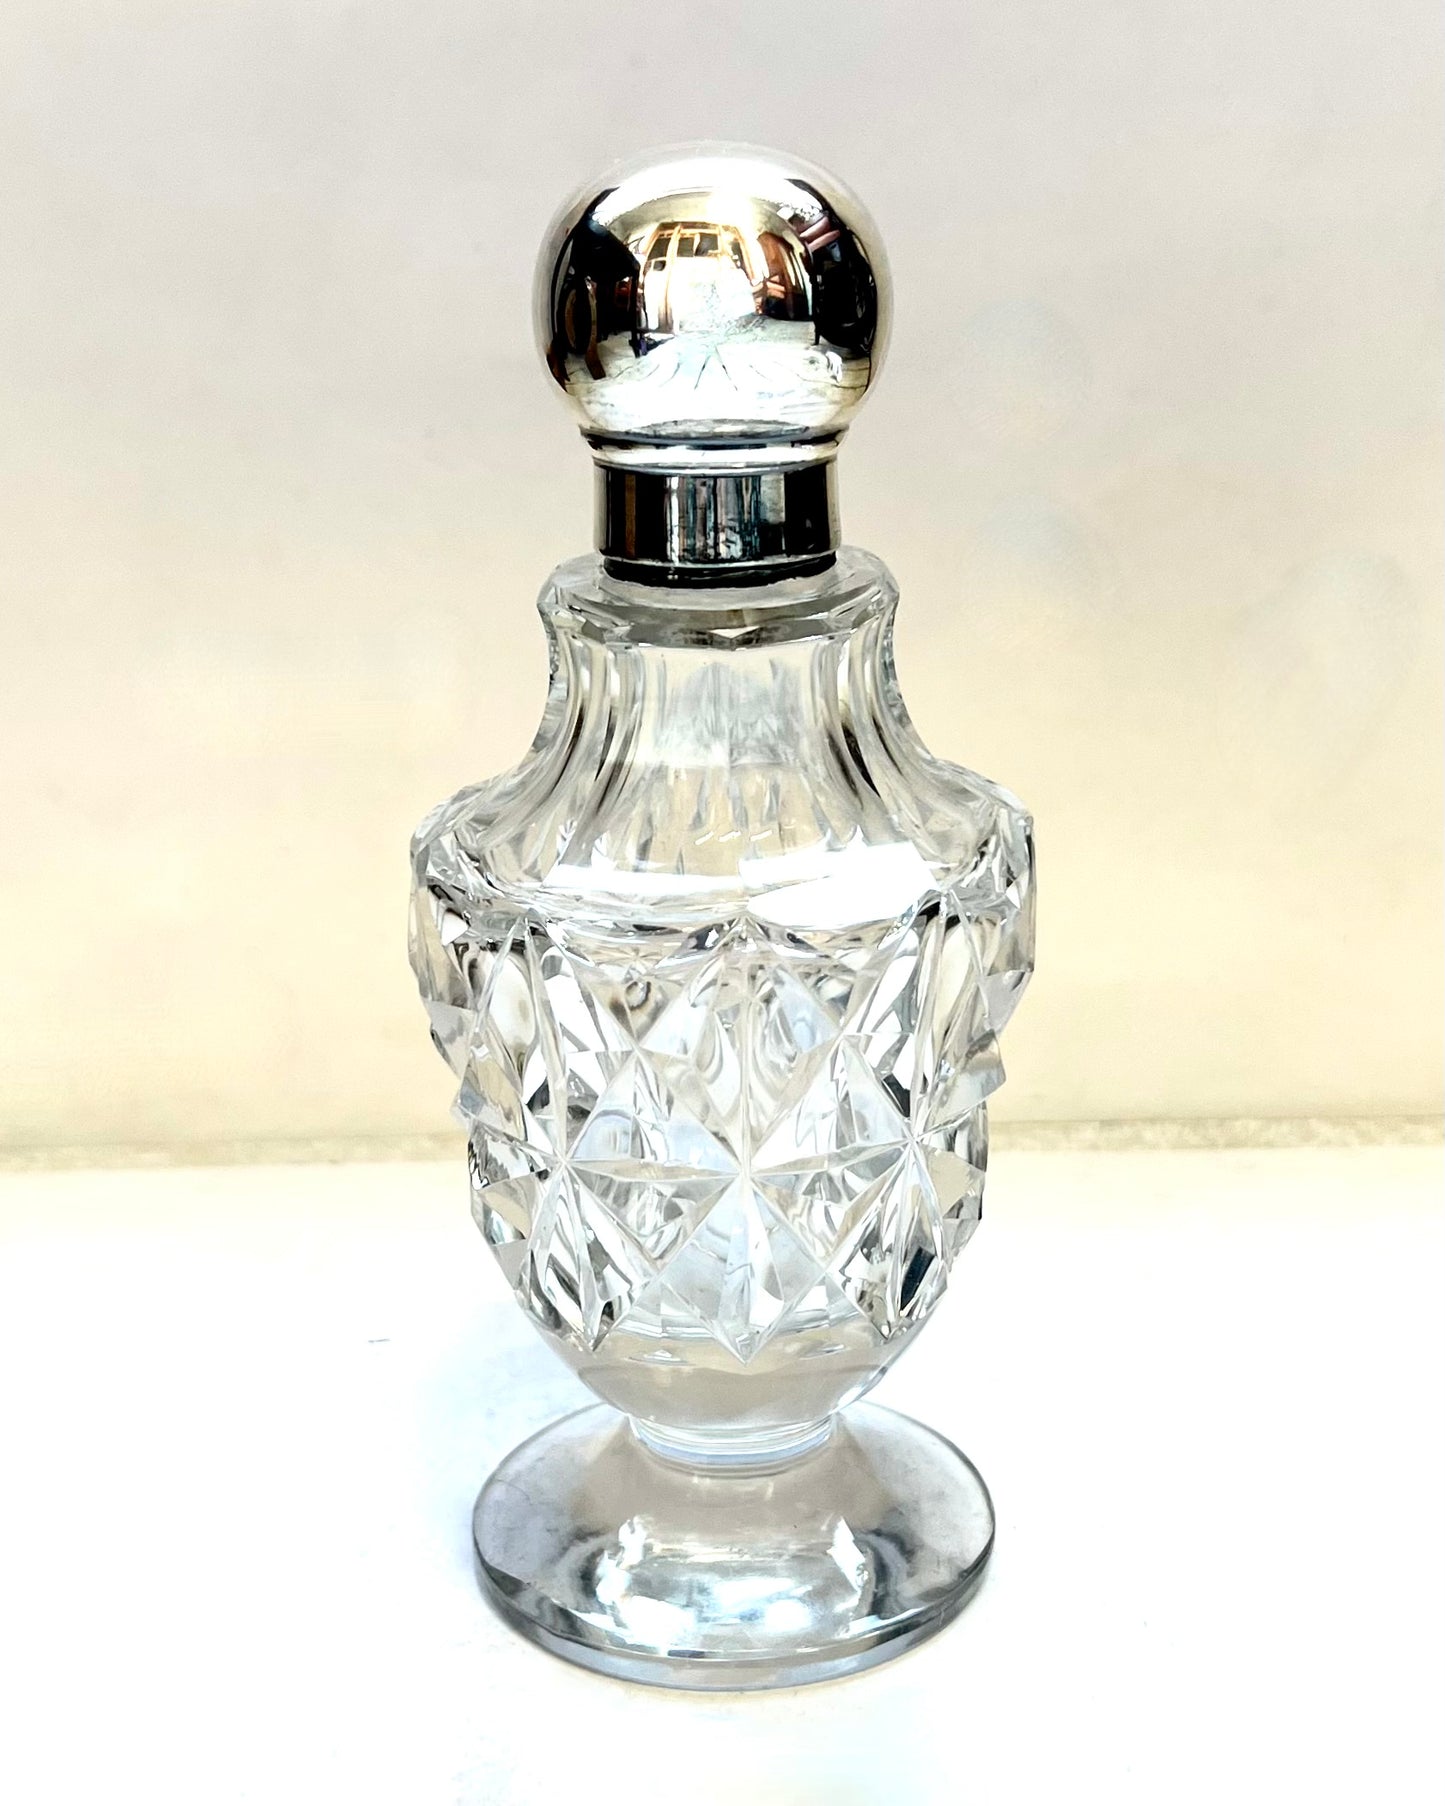 古董乔治五世雕花玻璃和纯银盥洗用品/香水瓶，伦敦 1919 年